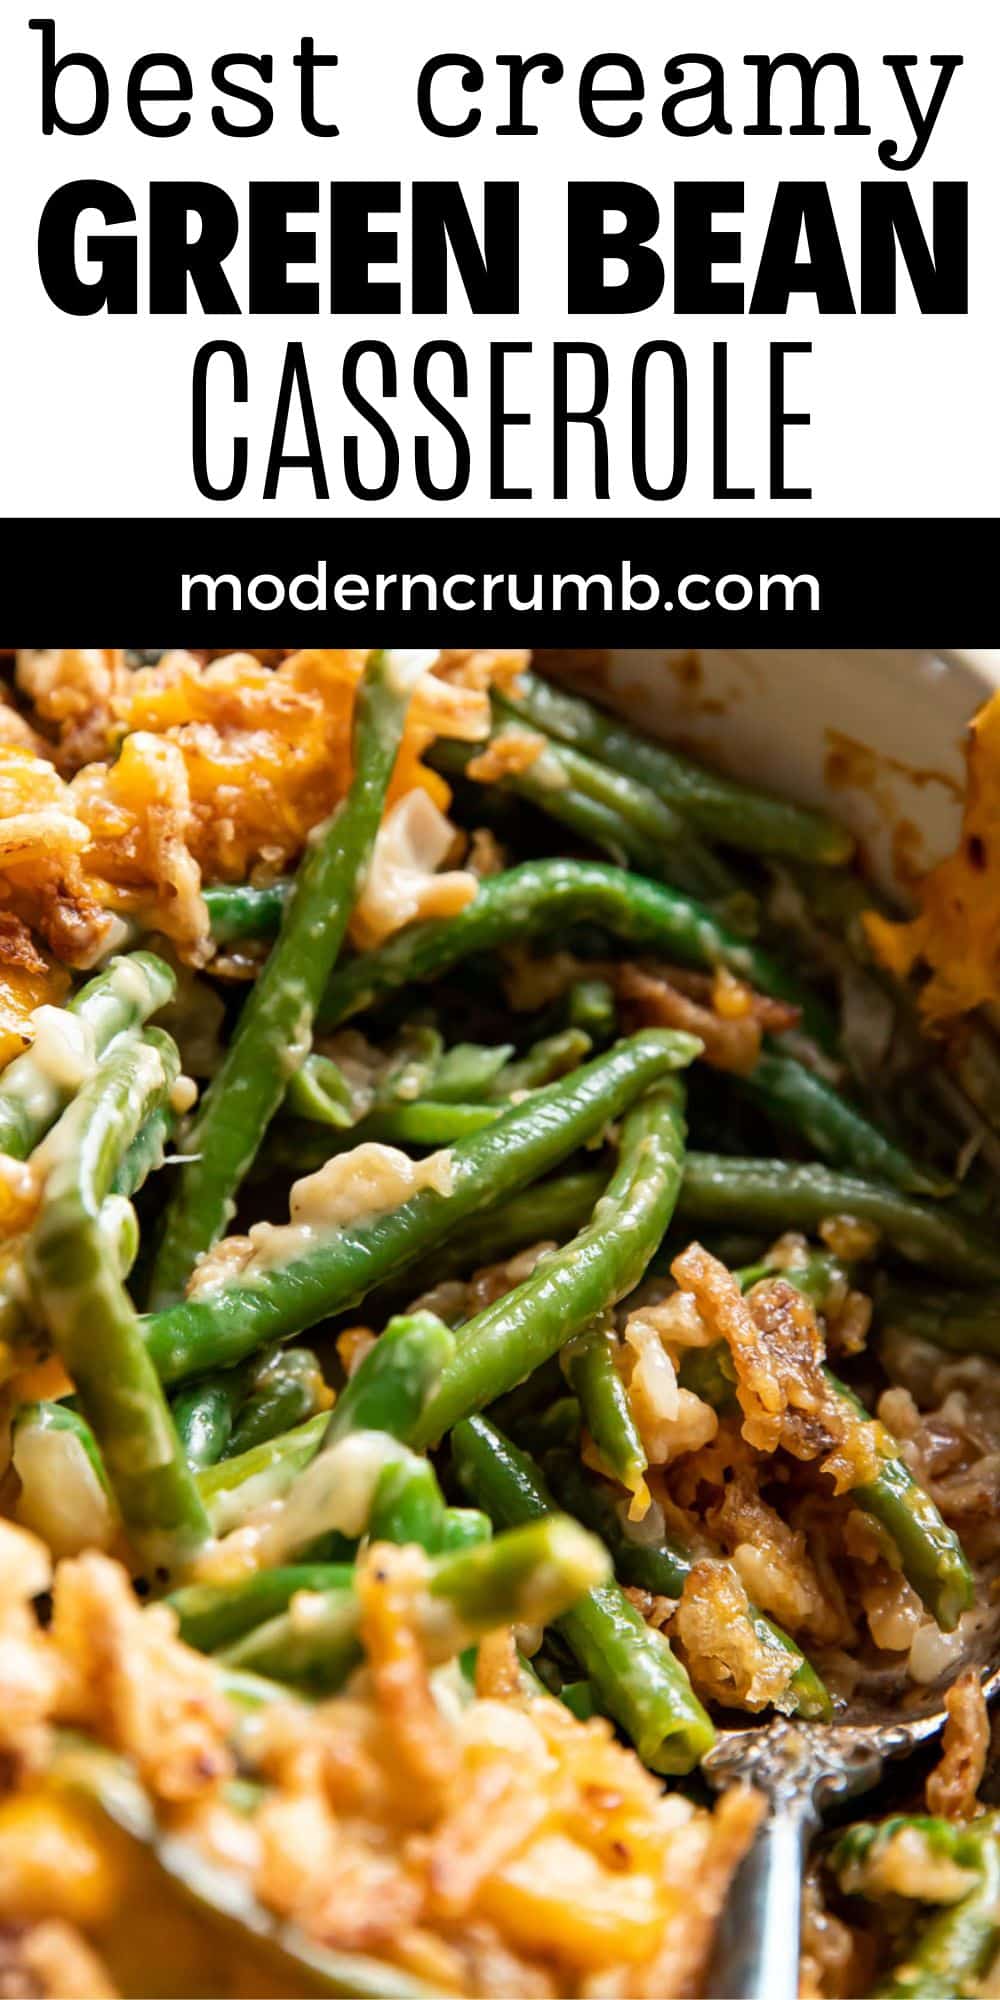 Green Bean Casserole - Modern Crumb